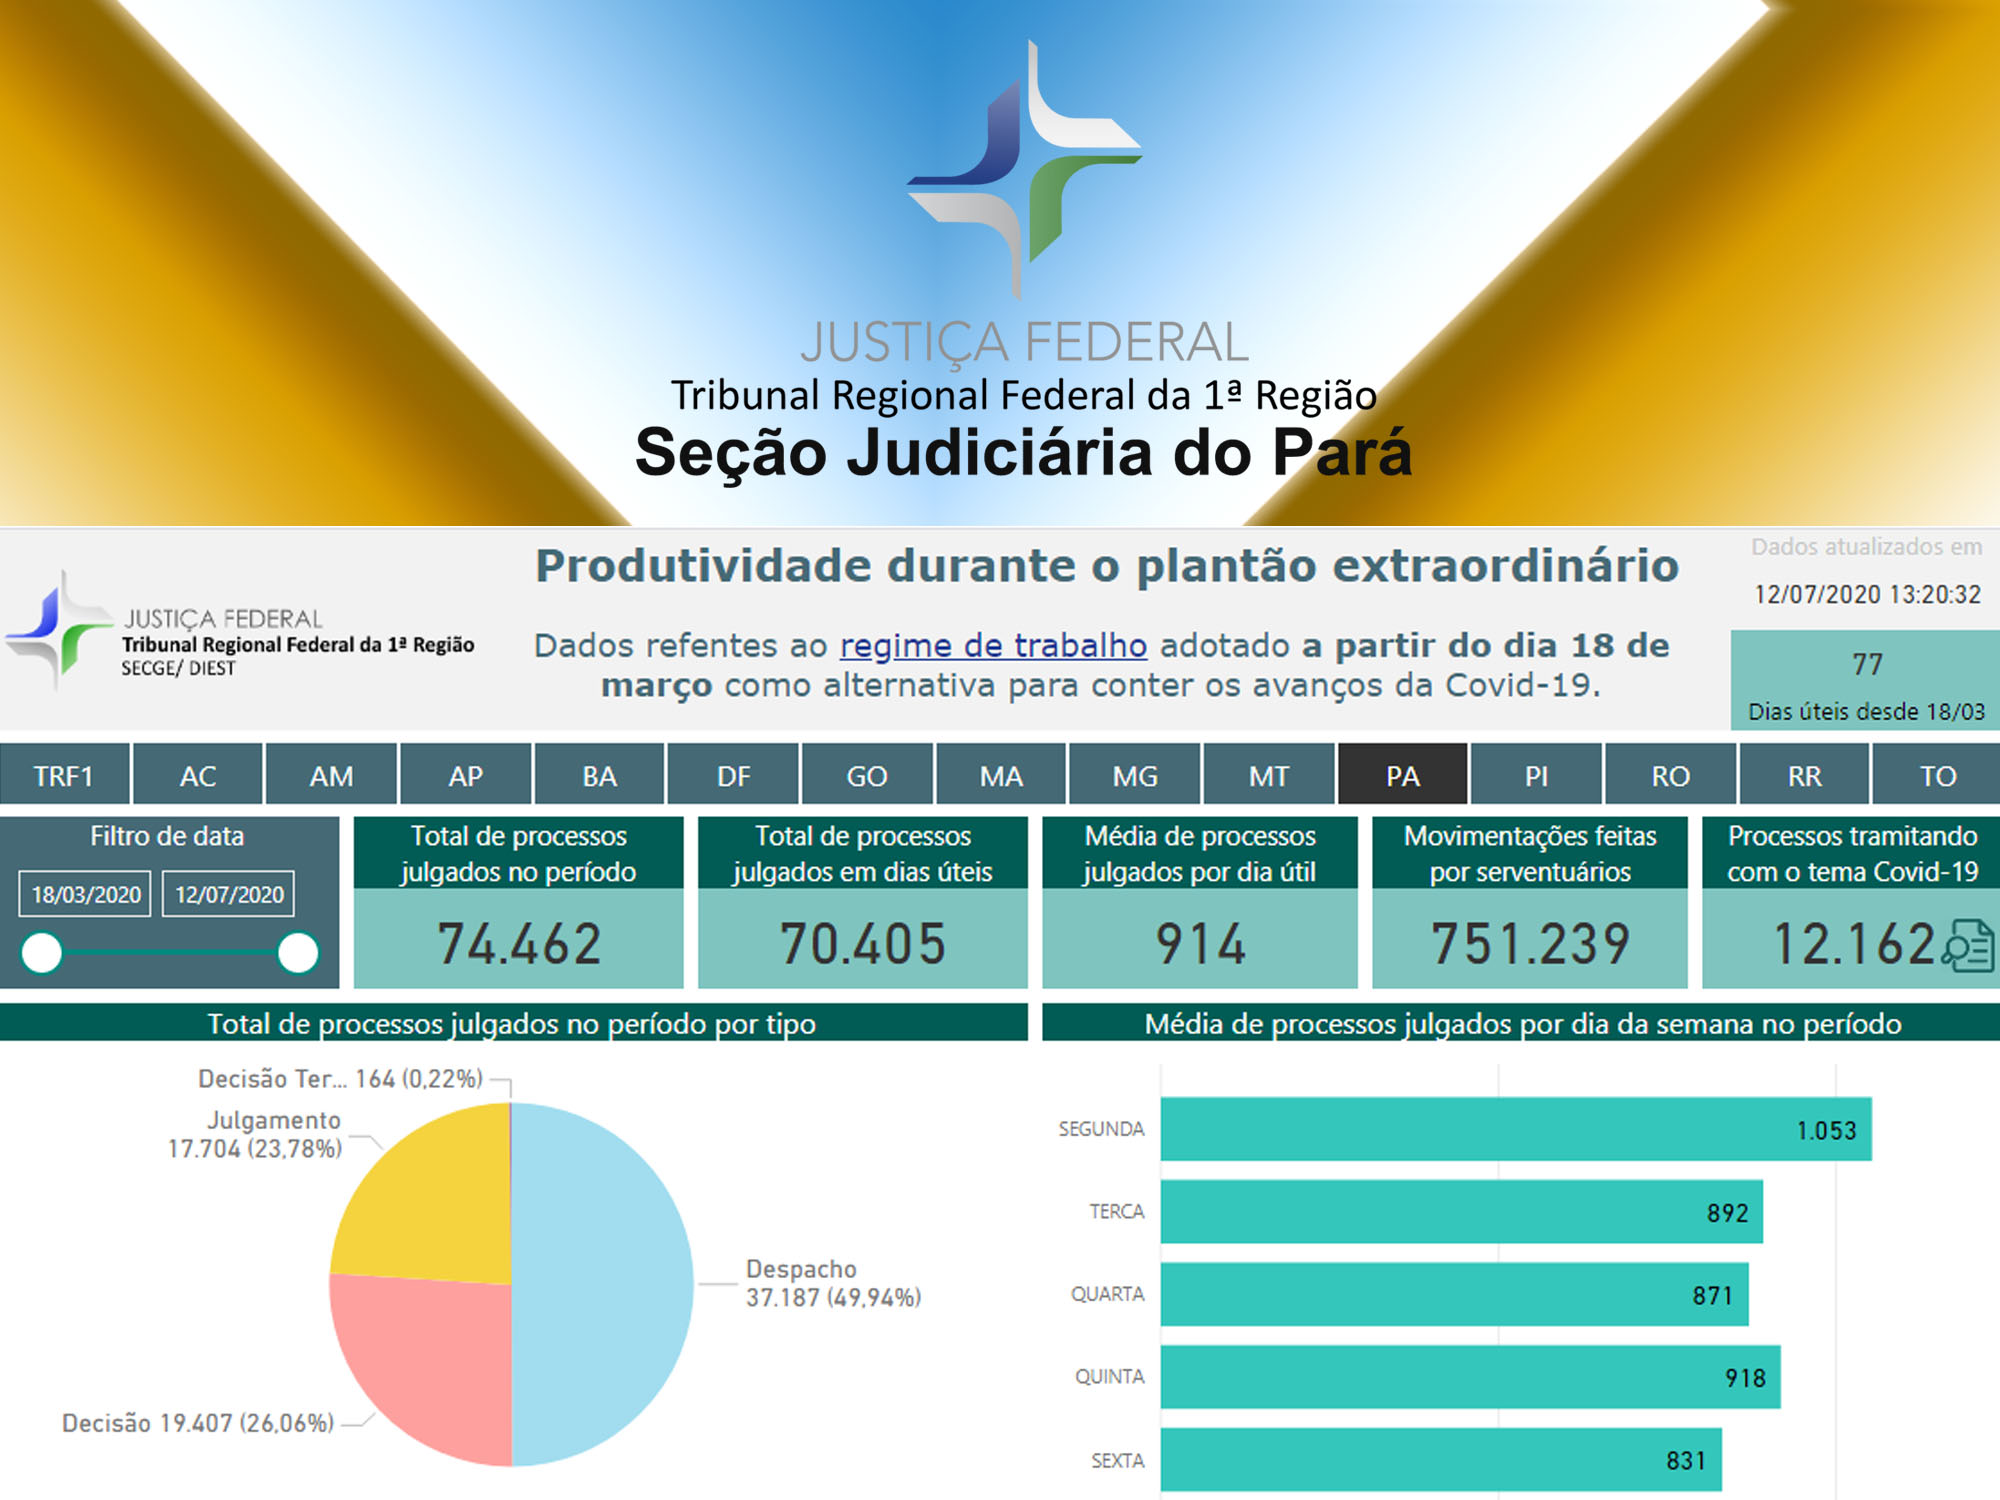 INSTITUCIONAL: Mais de 70 mil processos já foram julgados na Justiça Federal do Pará durante a pandemia